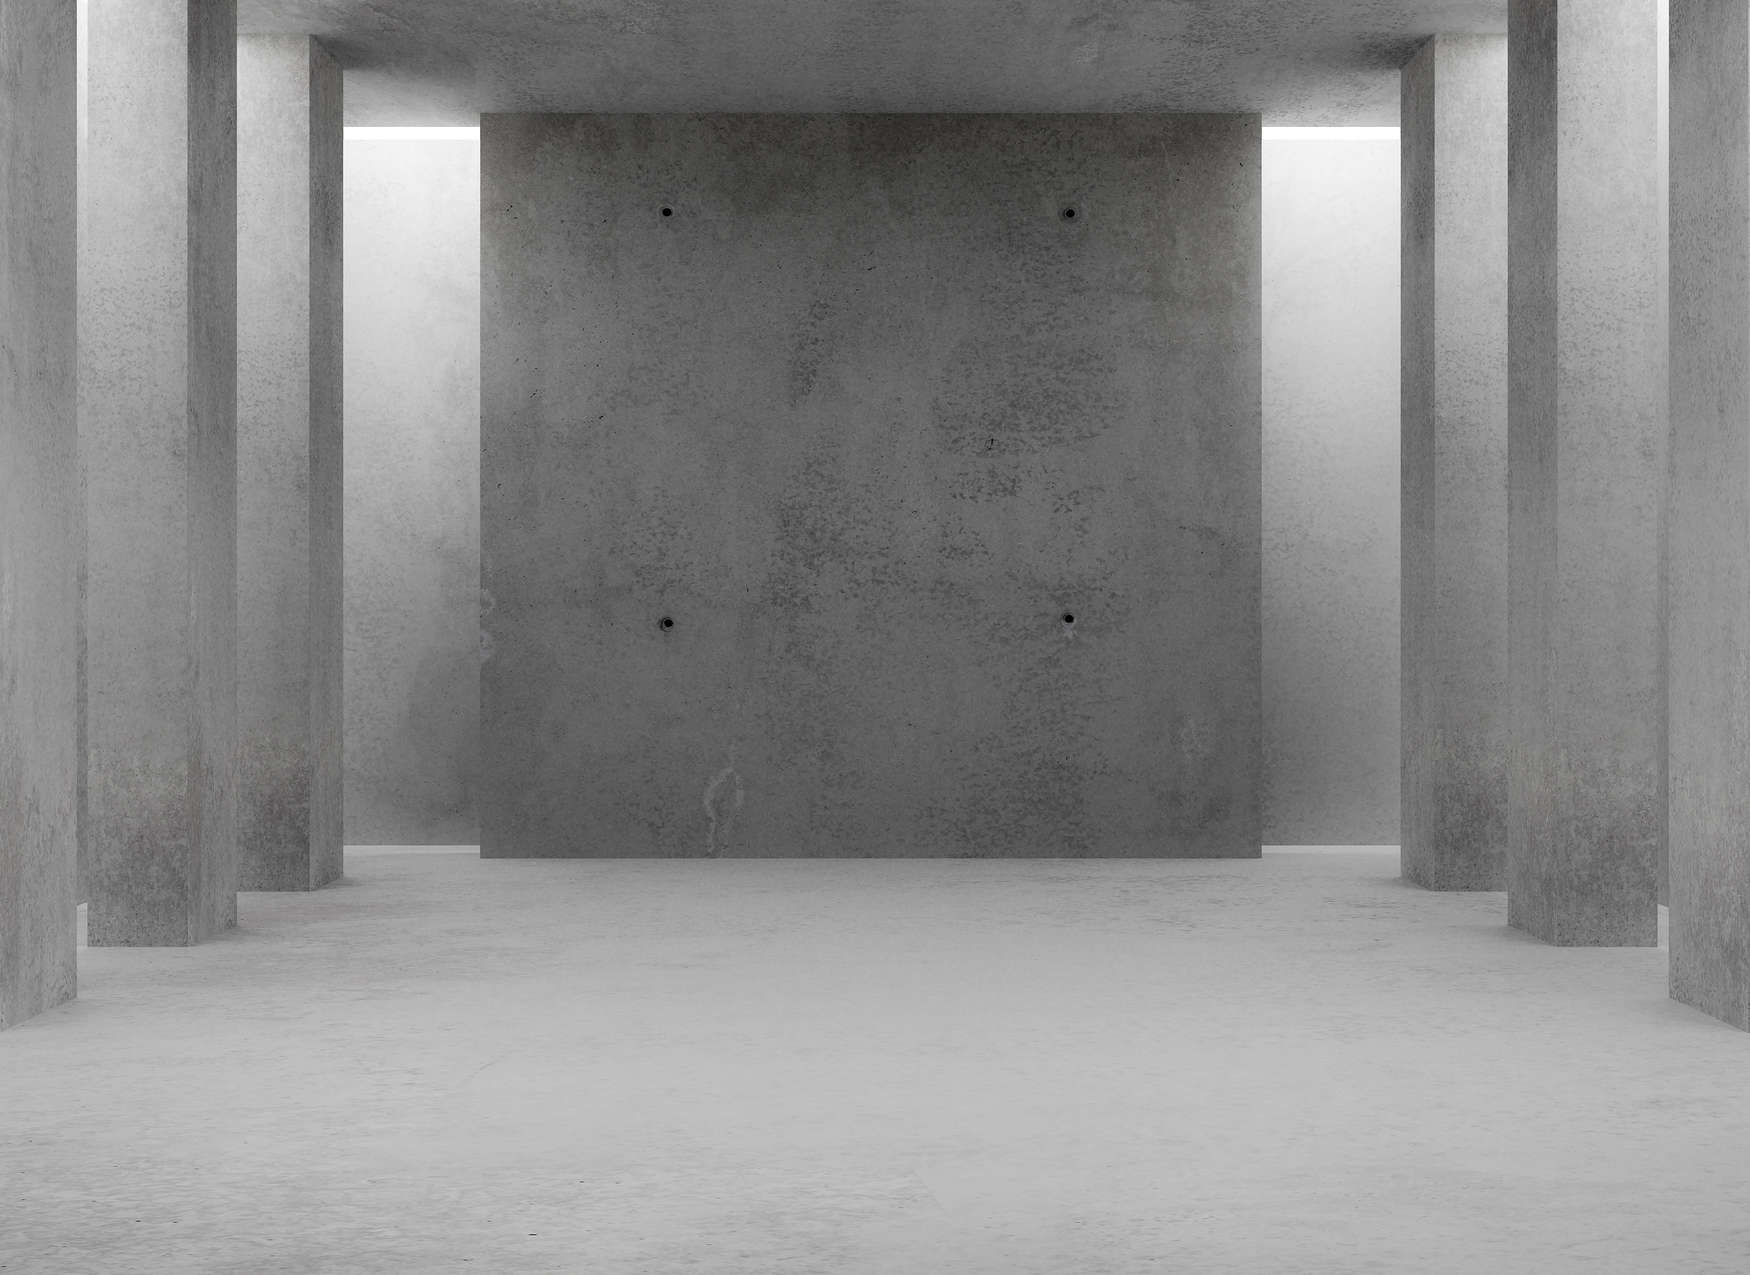             Fototapete mit einem 3D Beton Raum – Grau
        